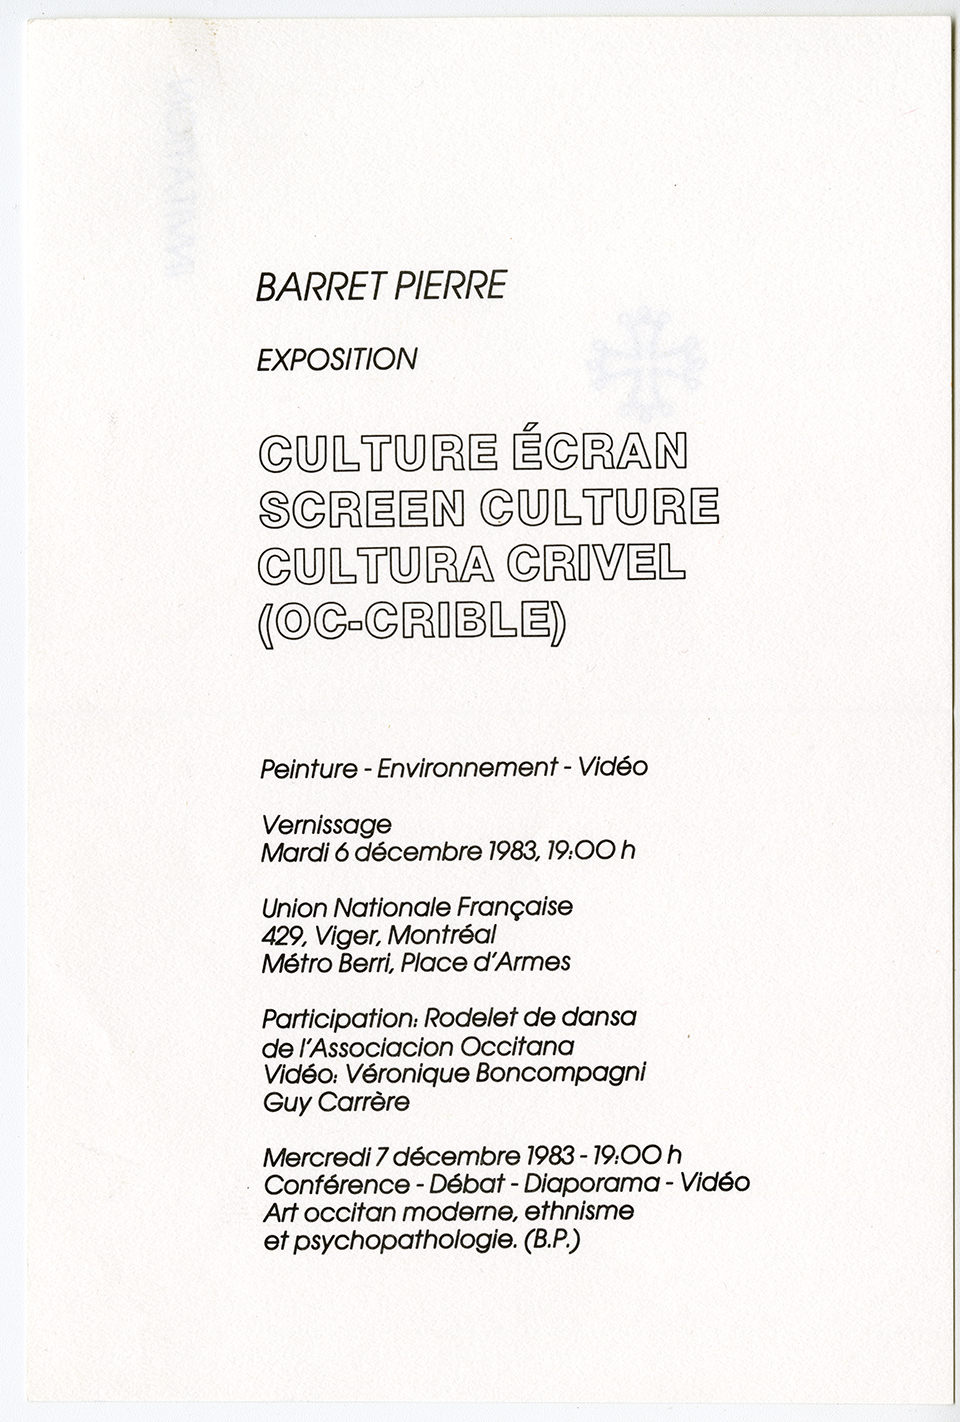 Carton d’invitation pour l’exposition Culture écran, à l’Union Nationale Française, décembre 1983. Archives UdeM, P0468-D-3-D0006-P0001